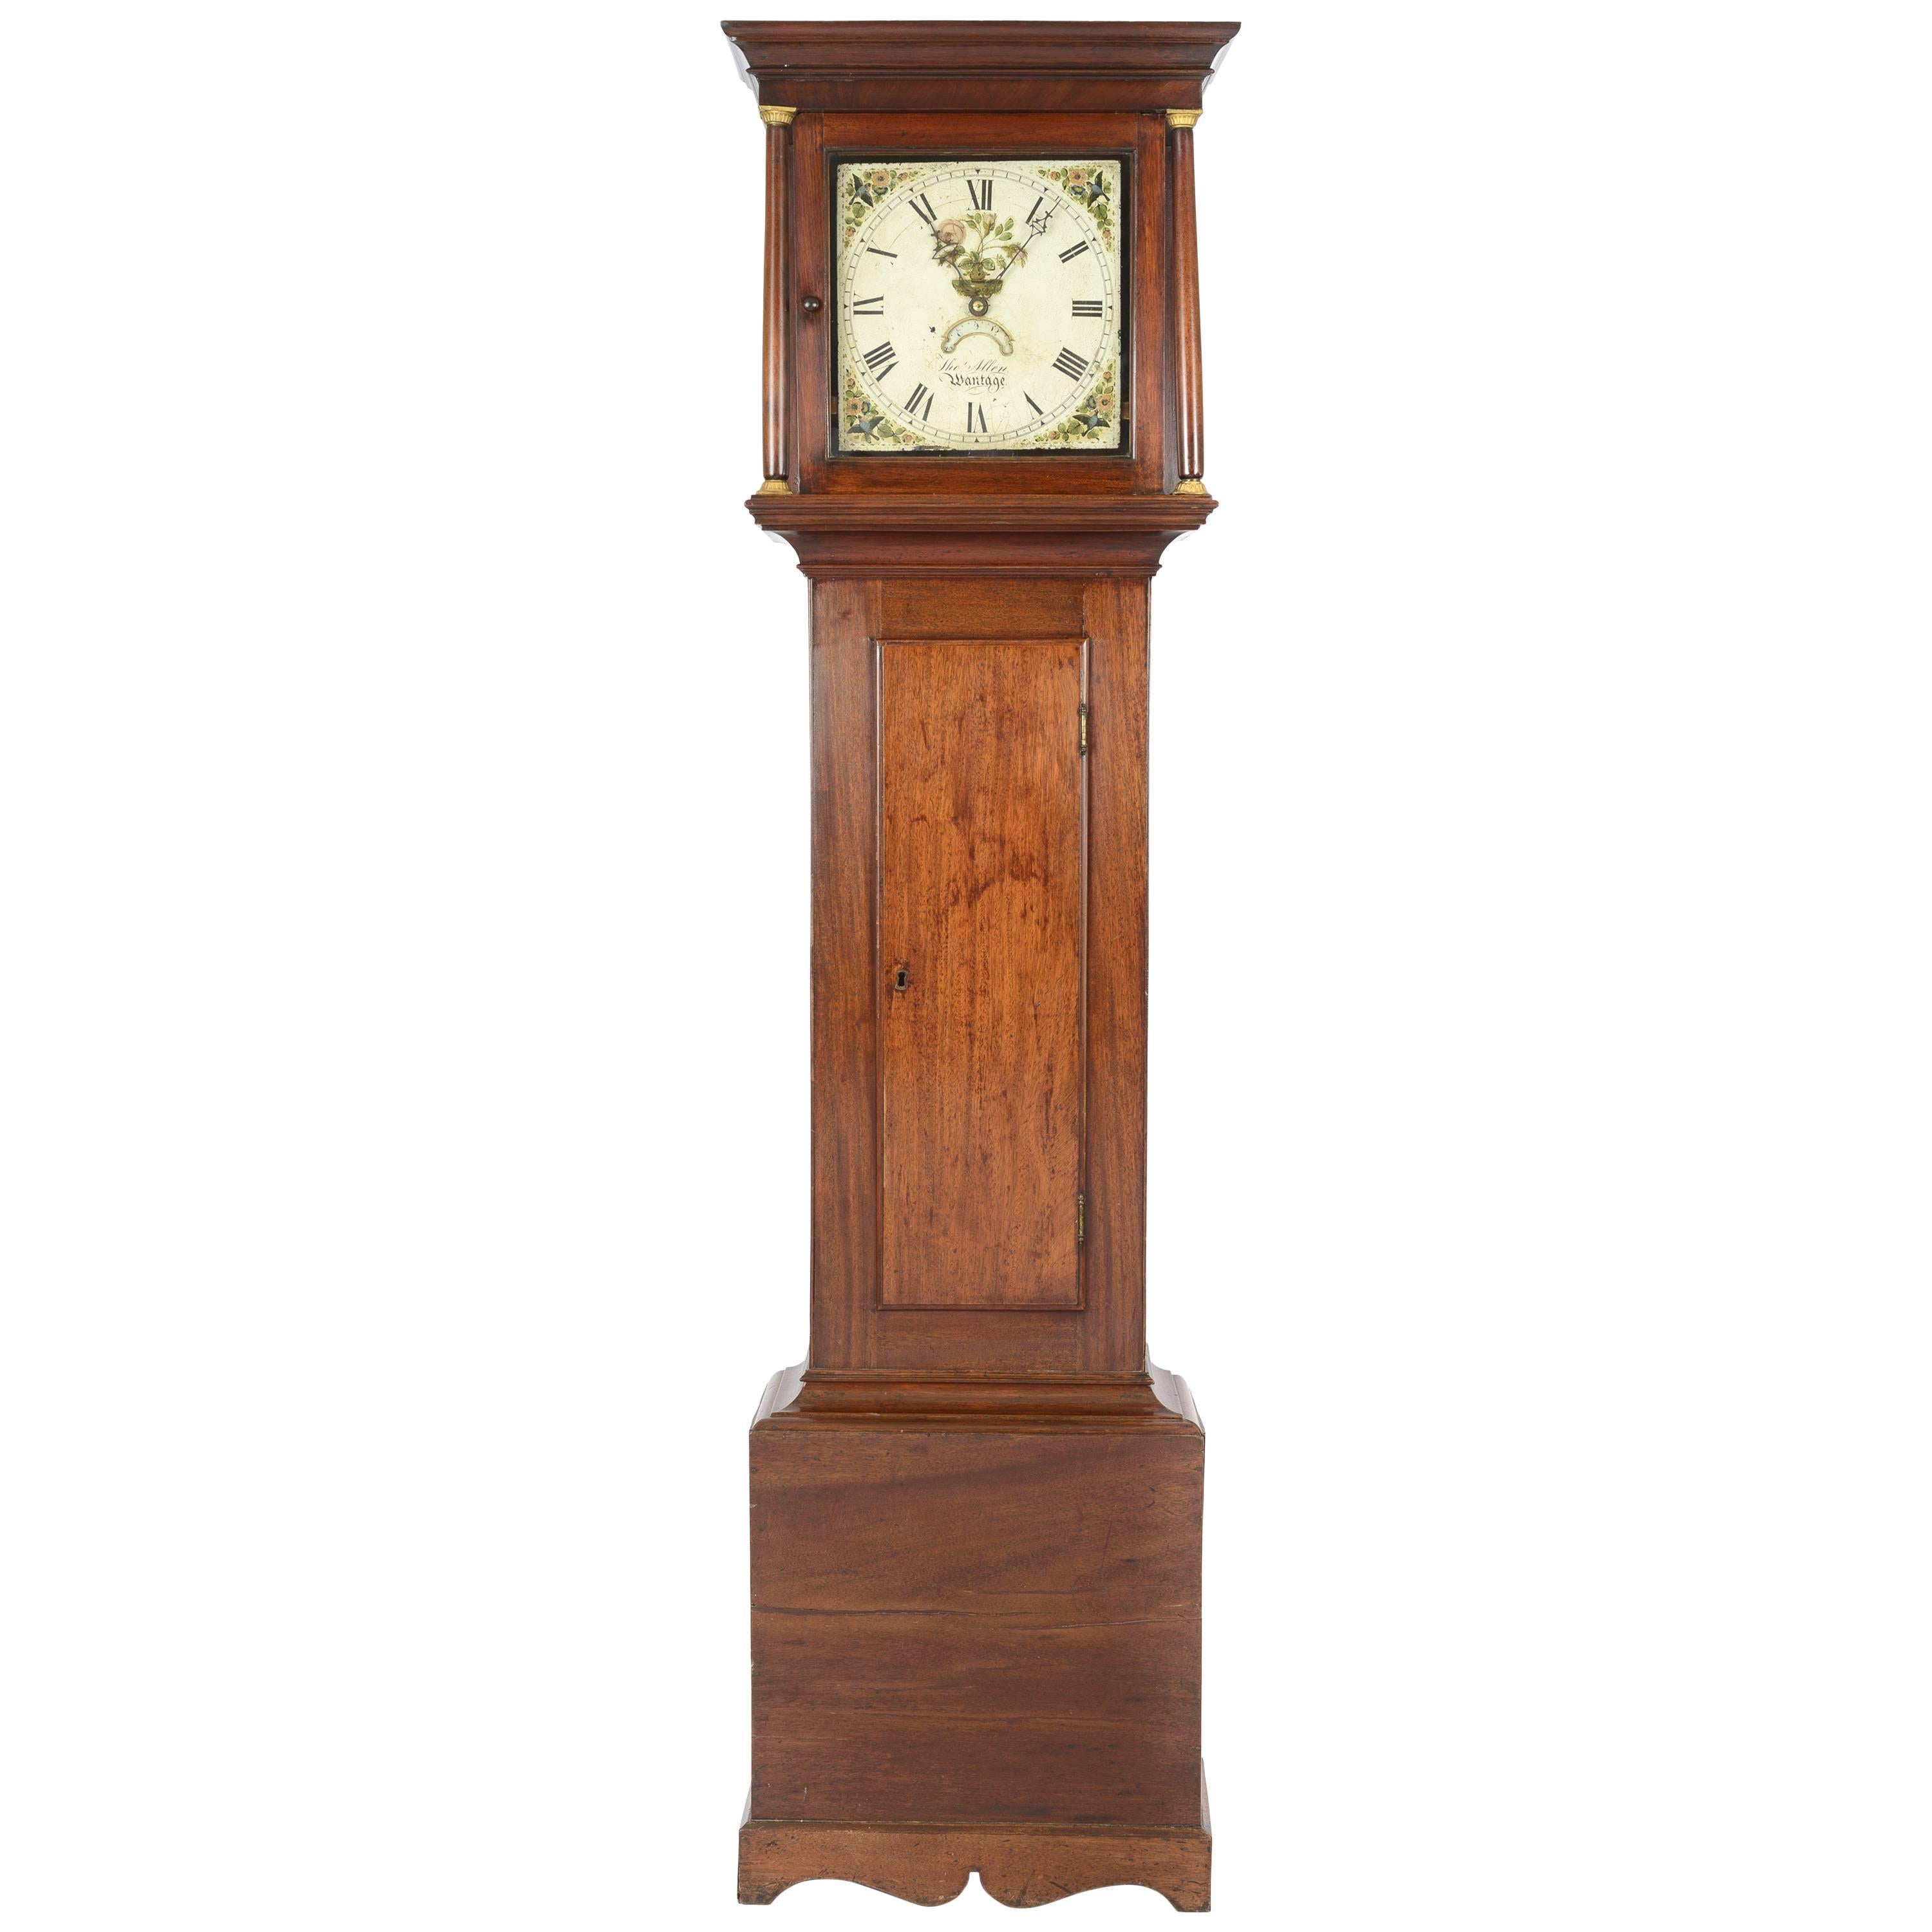 18th Century Mahogany English Longcase Clock, Signed Thomas Allen, Wantage